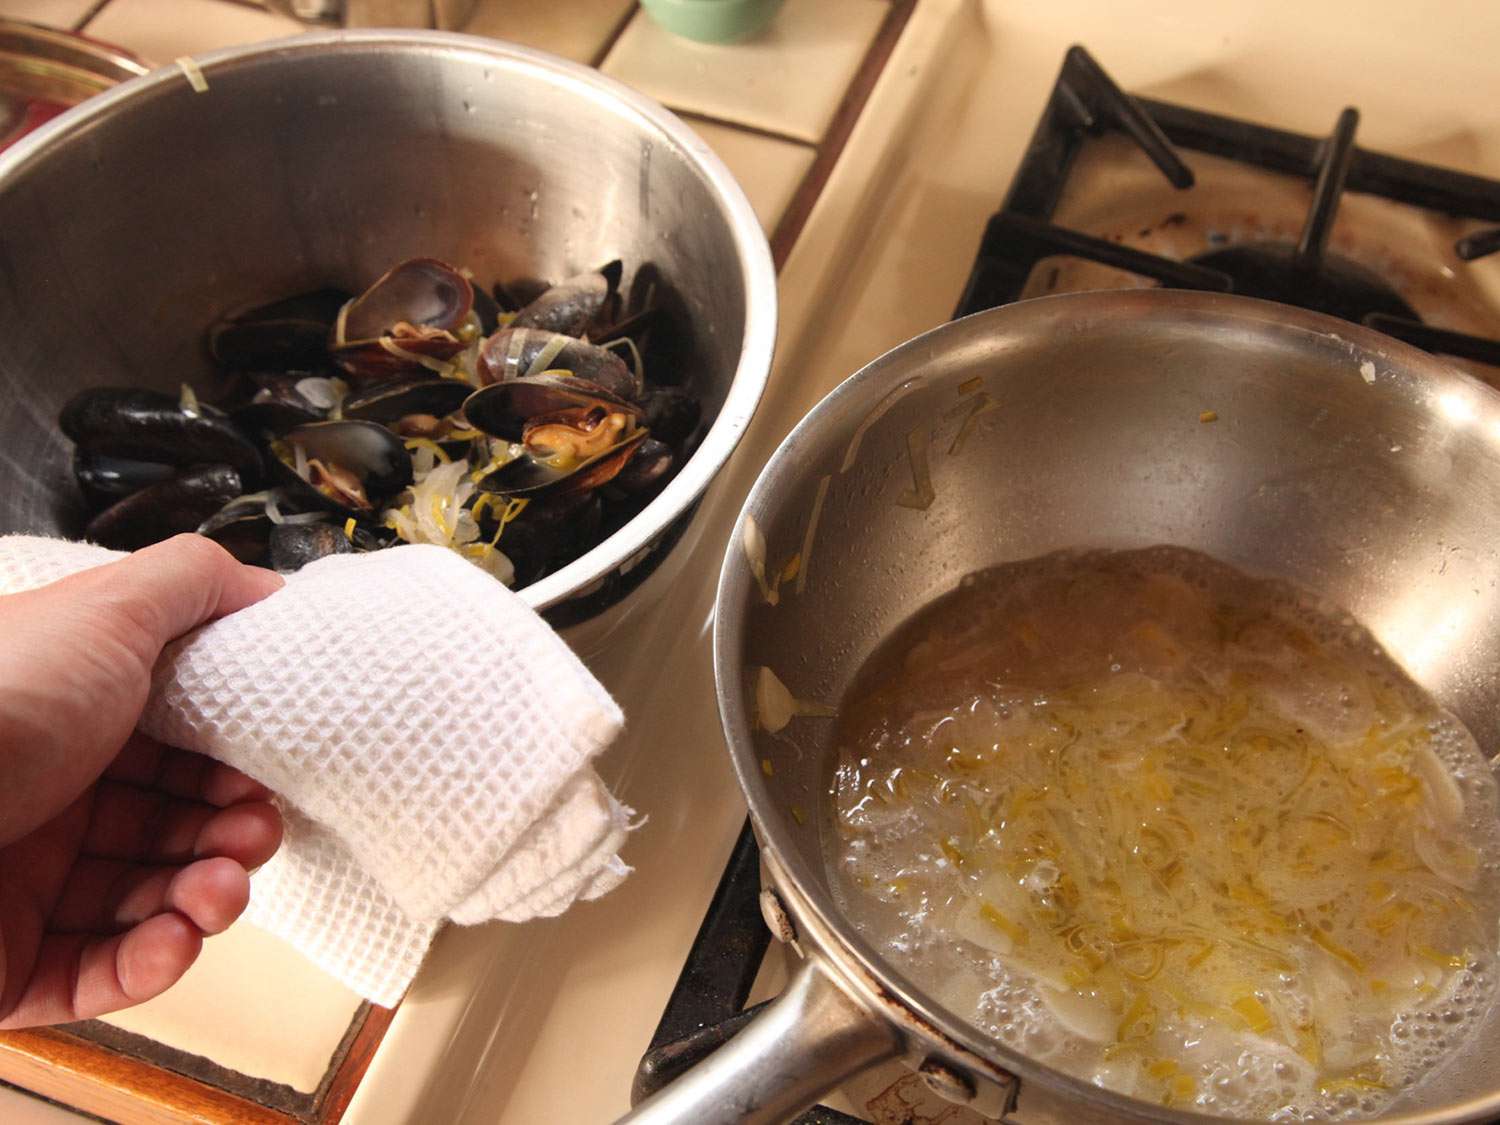 蒸熟的，打开的贻贝放在碗里备用。炖贻贝的锅还在煨着。